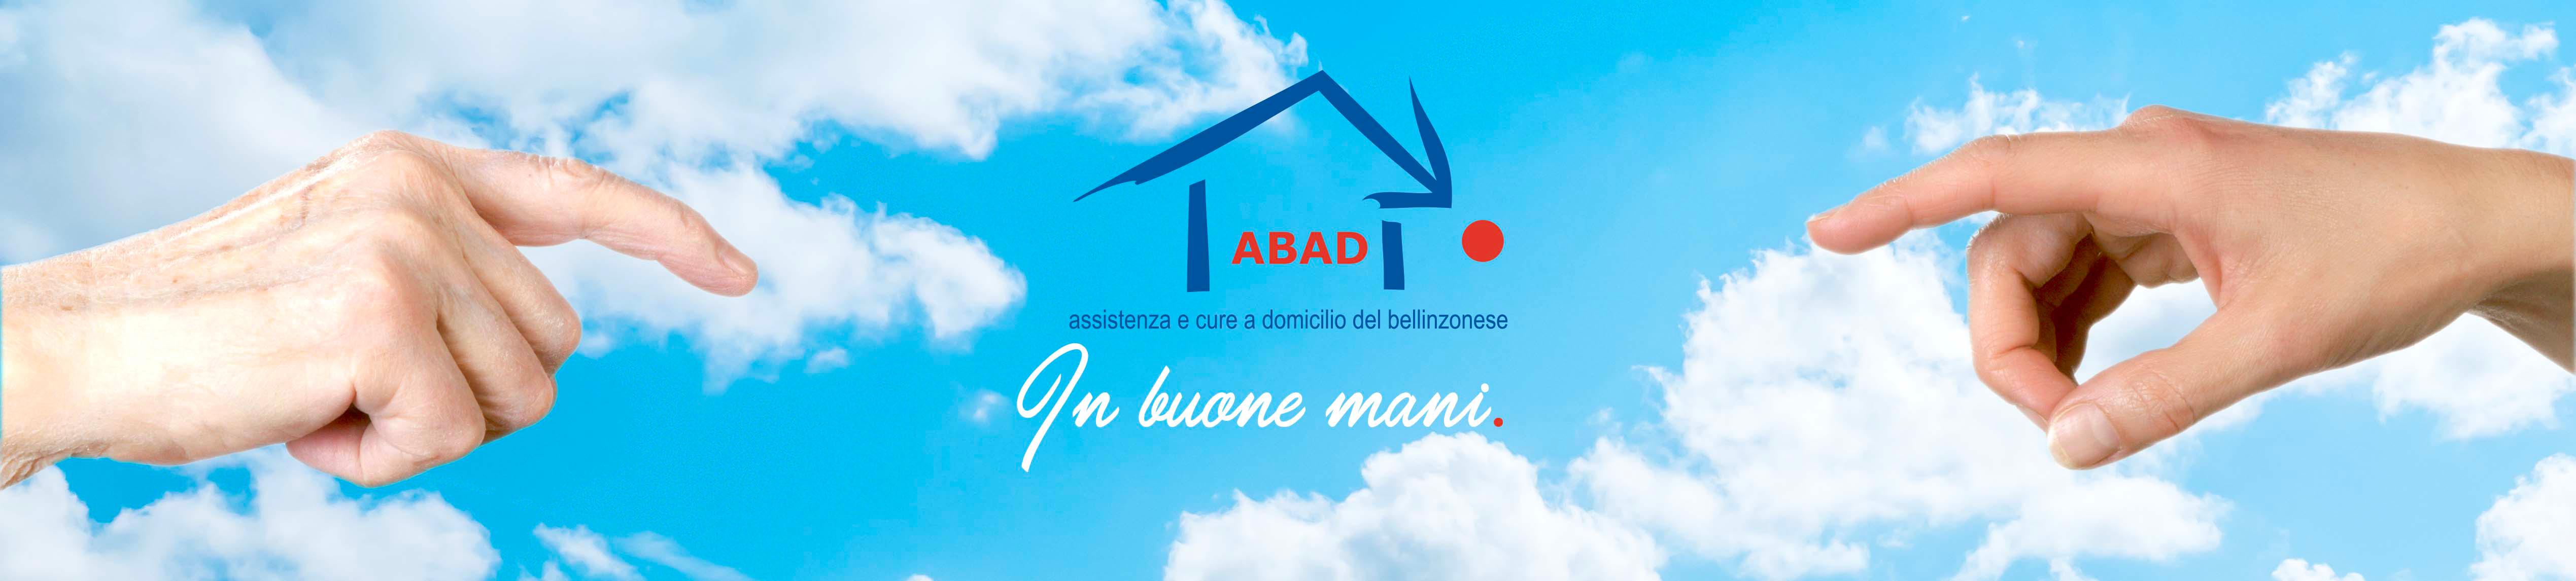 Bilder ABAD Associazione bellinzonese per l'assistenza e cura a domicilio